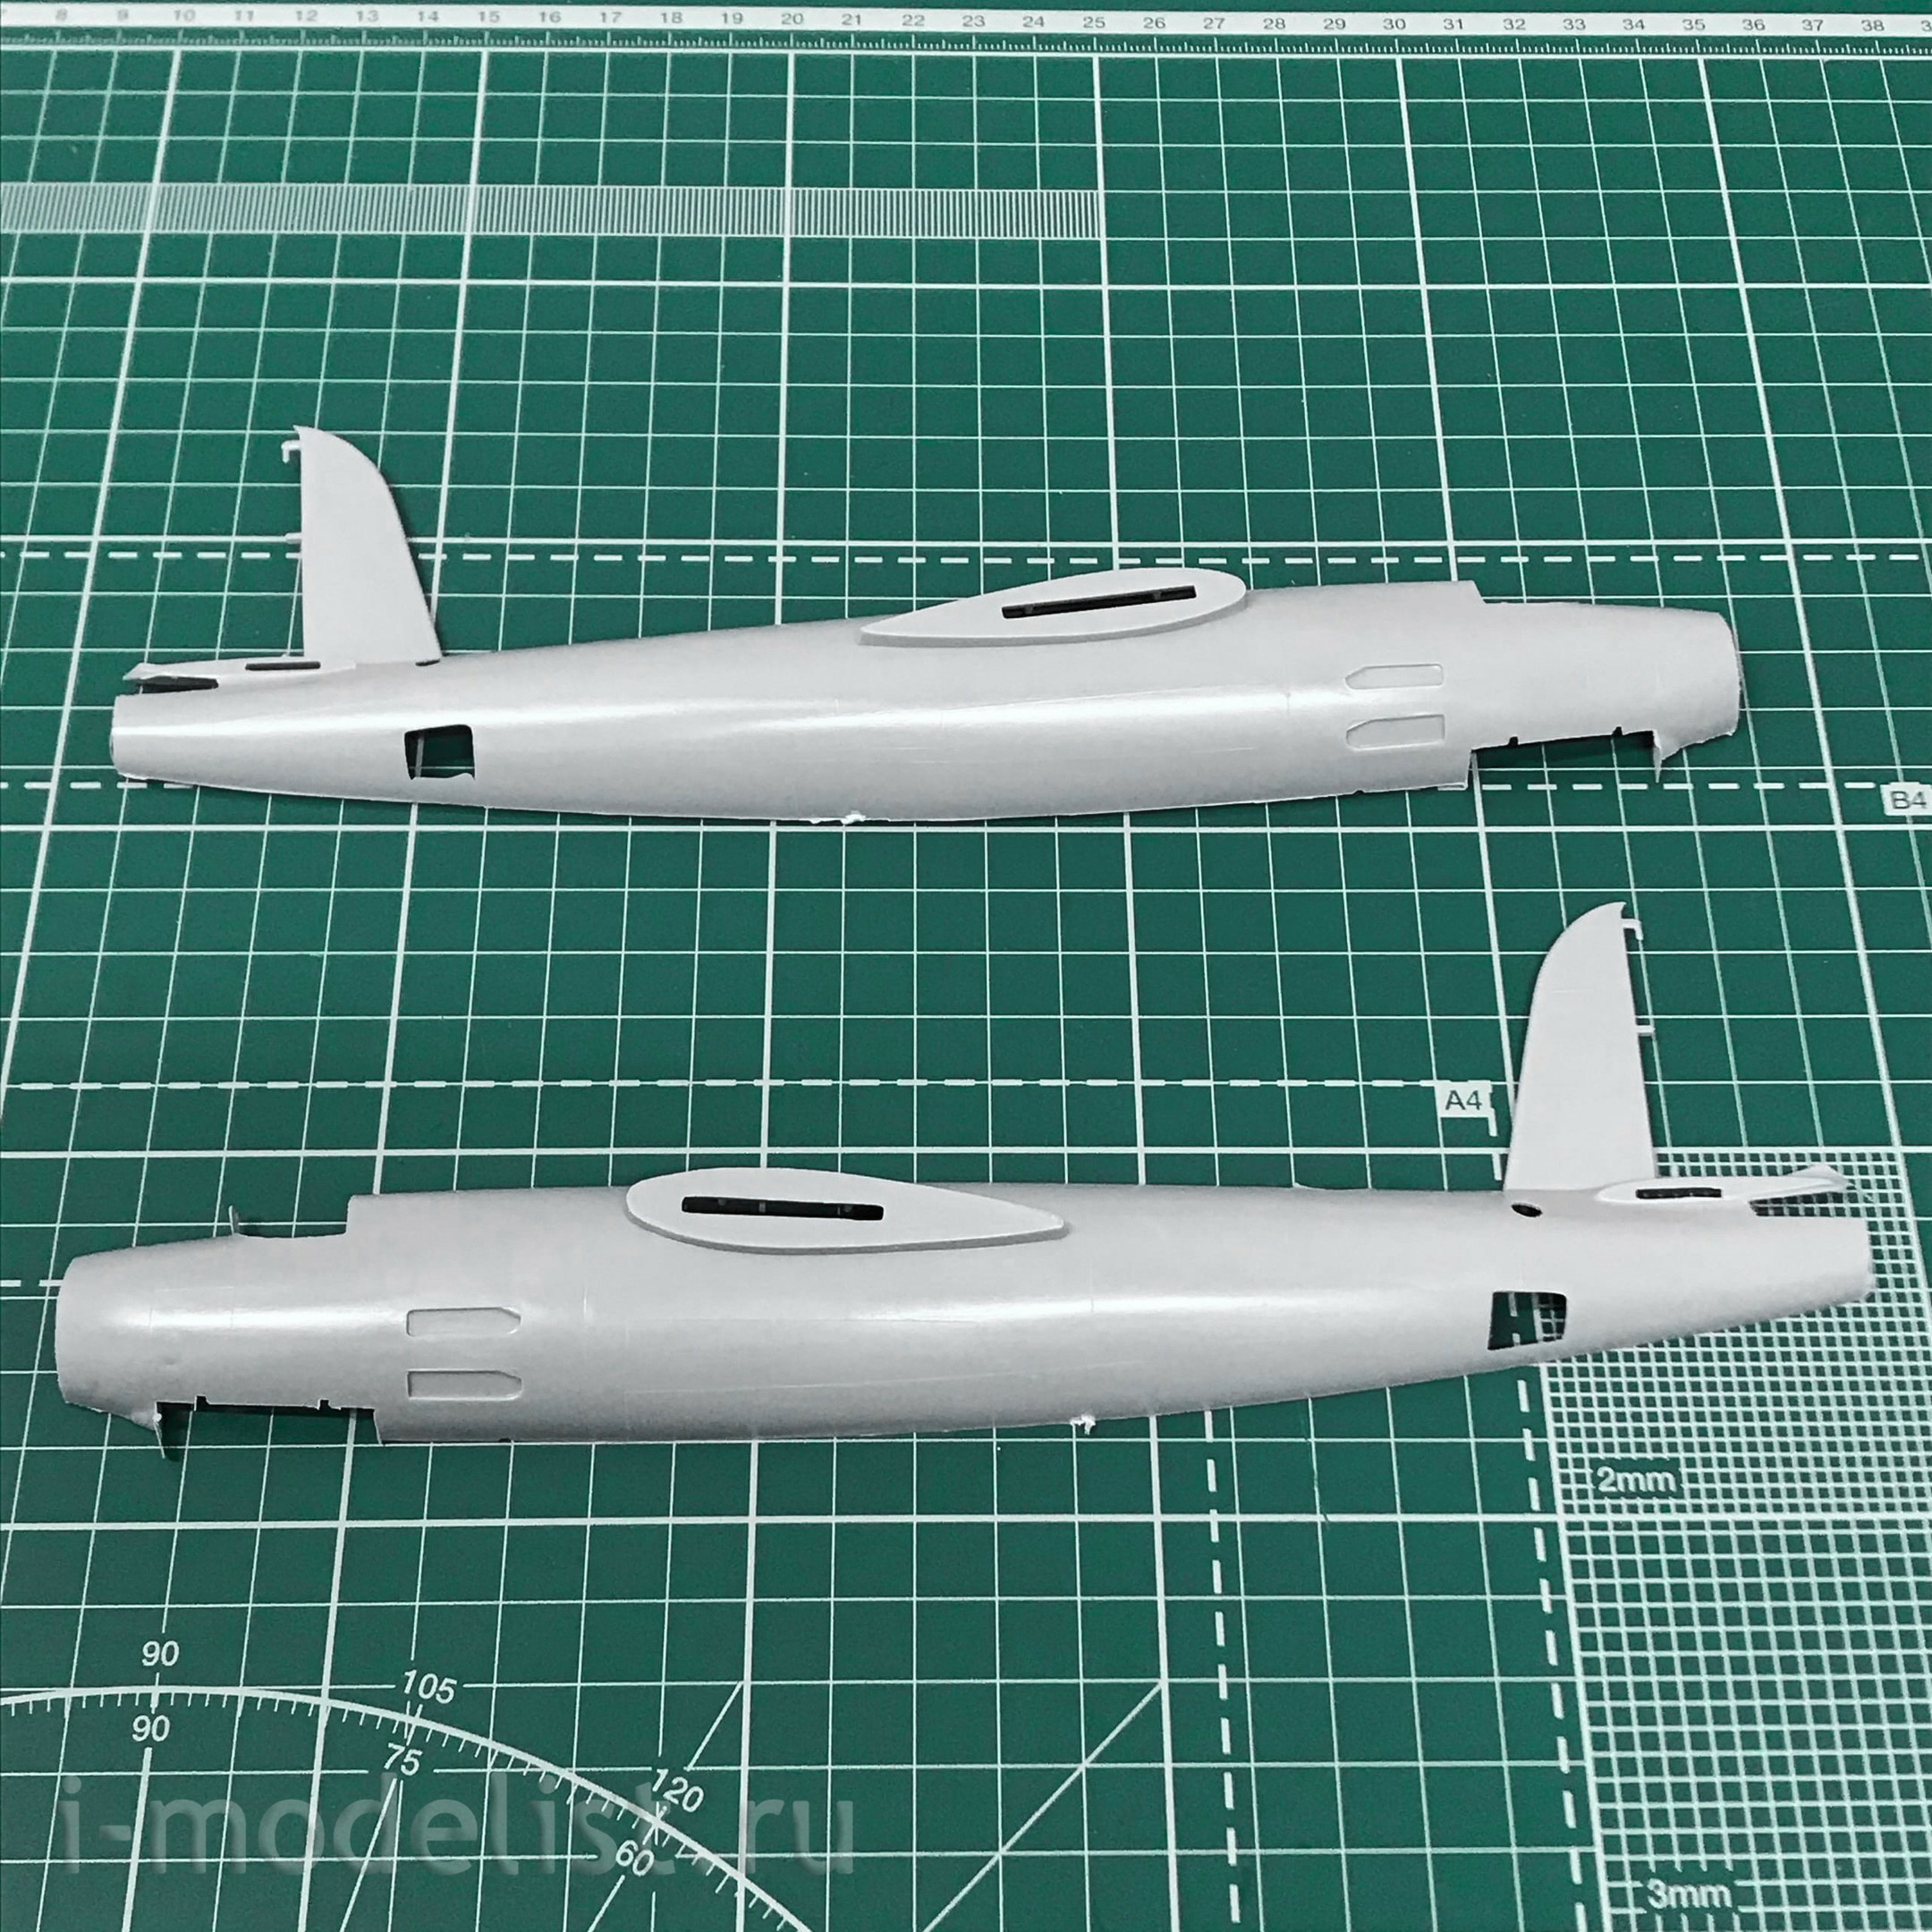 72007 ARK-models 1/72 Средний бомбардировщик Мартин В-26 «Мародёр»